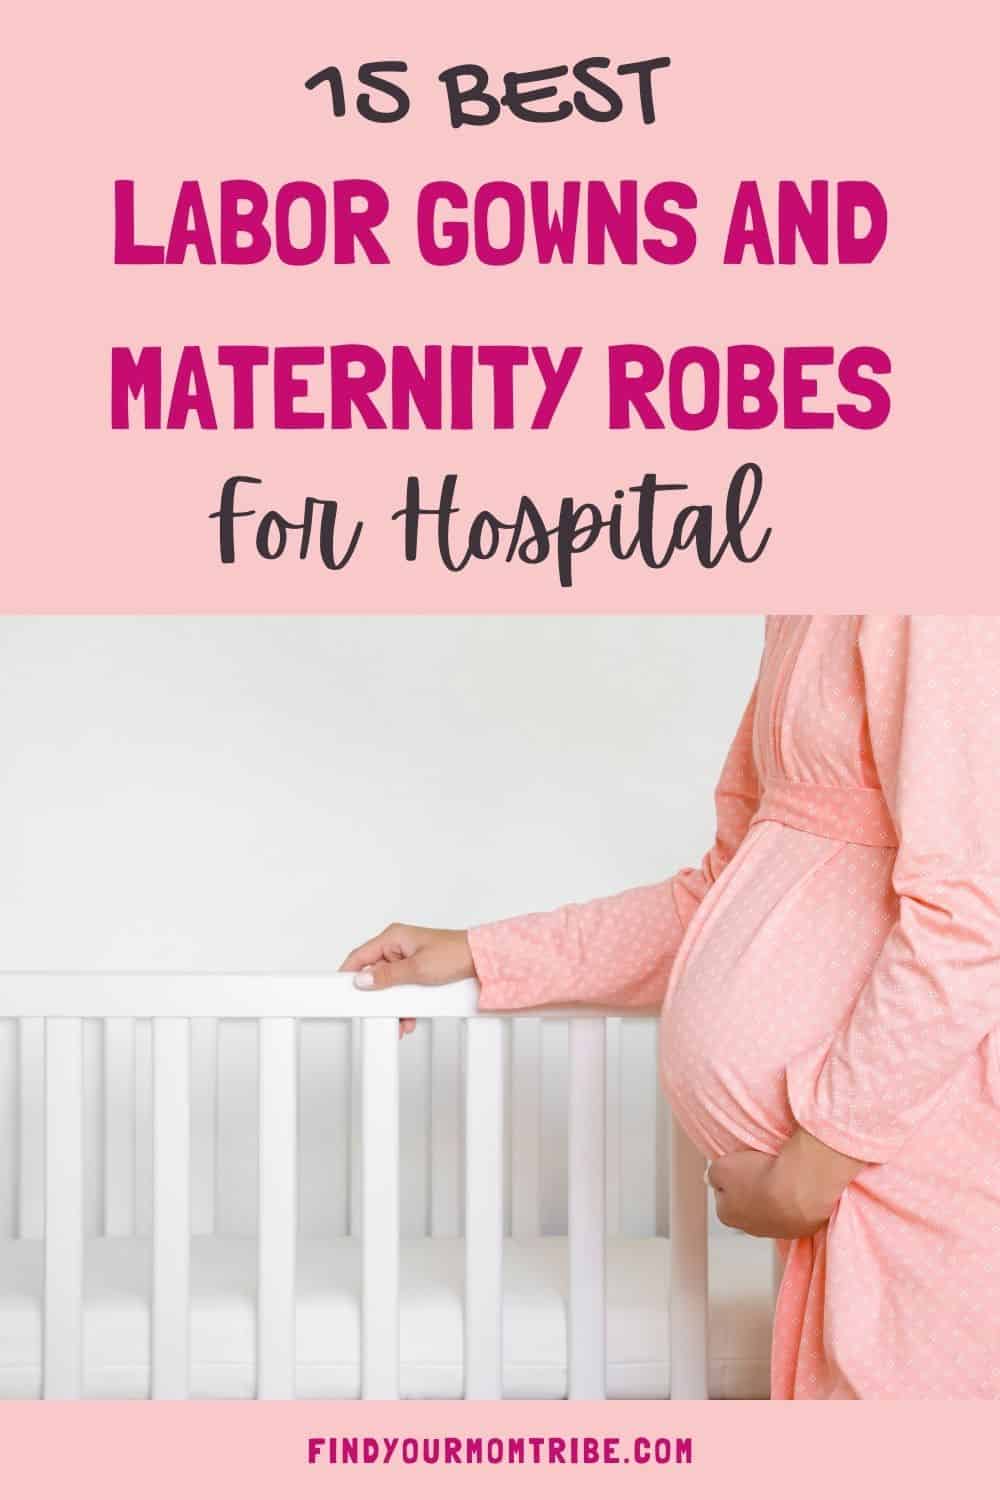 Pinterest maternity robe for hospital 